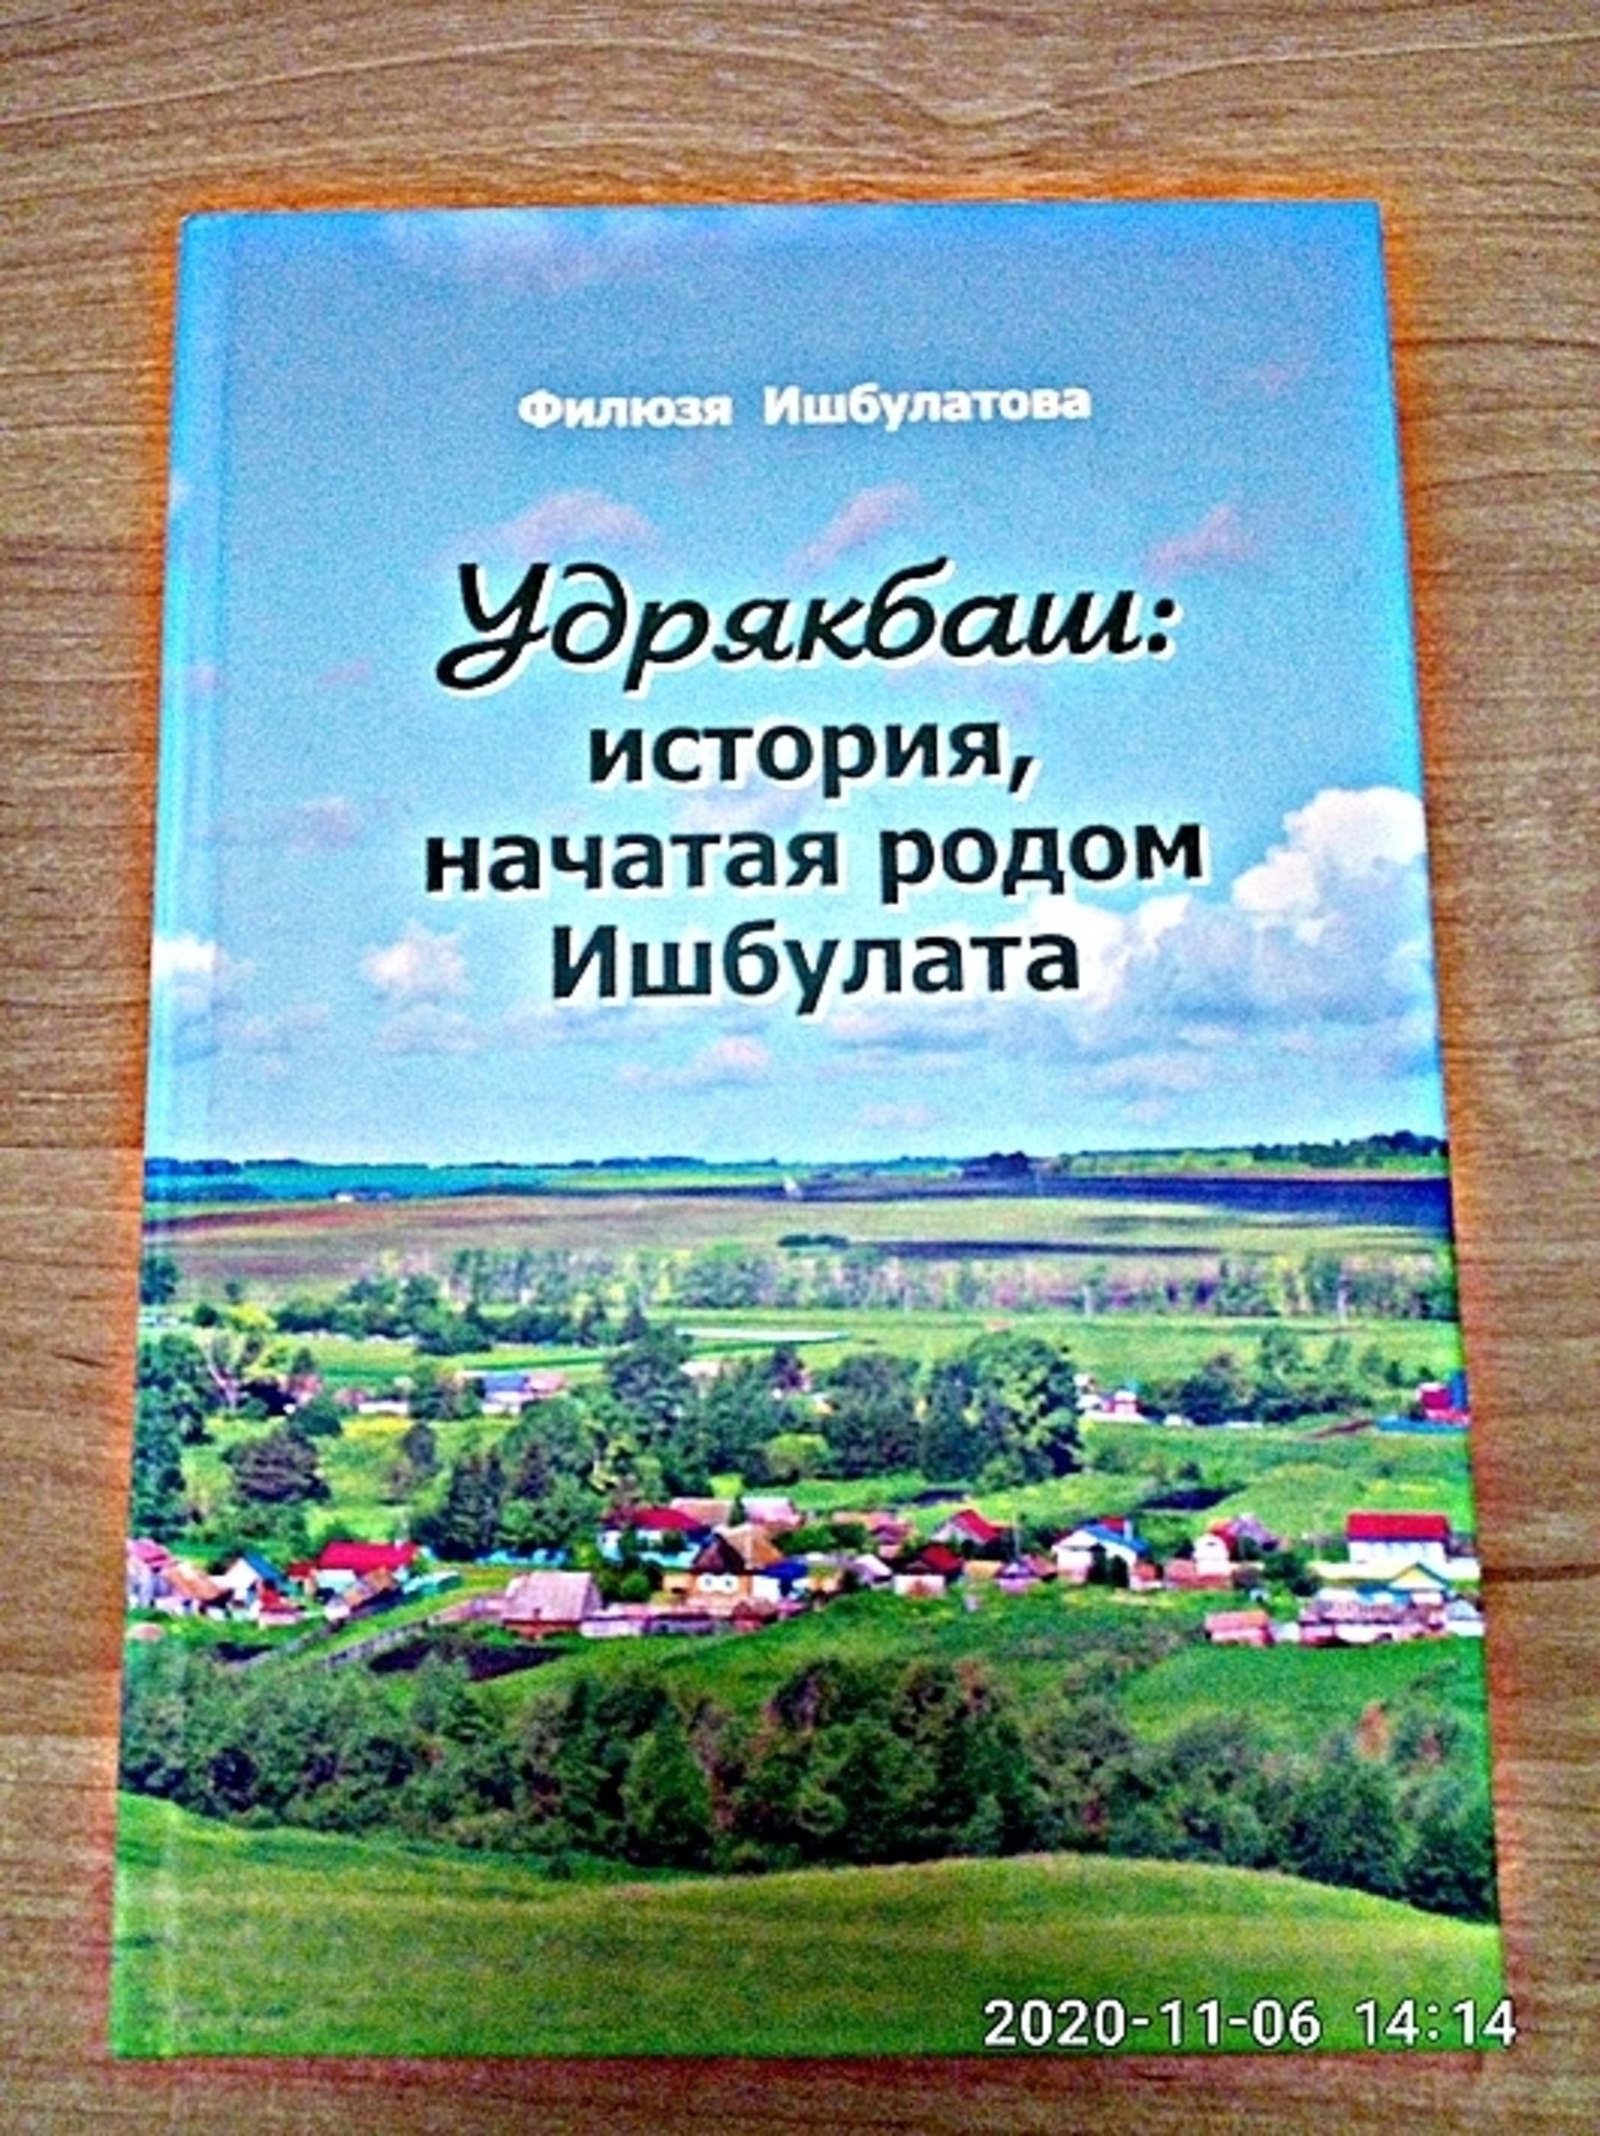 Настоящим подарком для удрякбашевцев стала книга «Удрякбаш: история, начатая родом Ишбулата», выпущенная Филюзой Ишбулатовой.